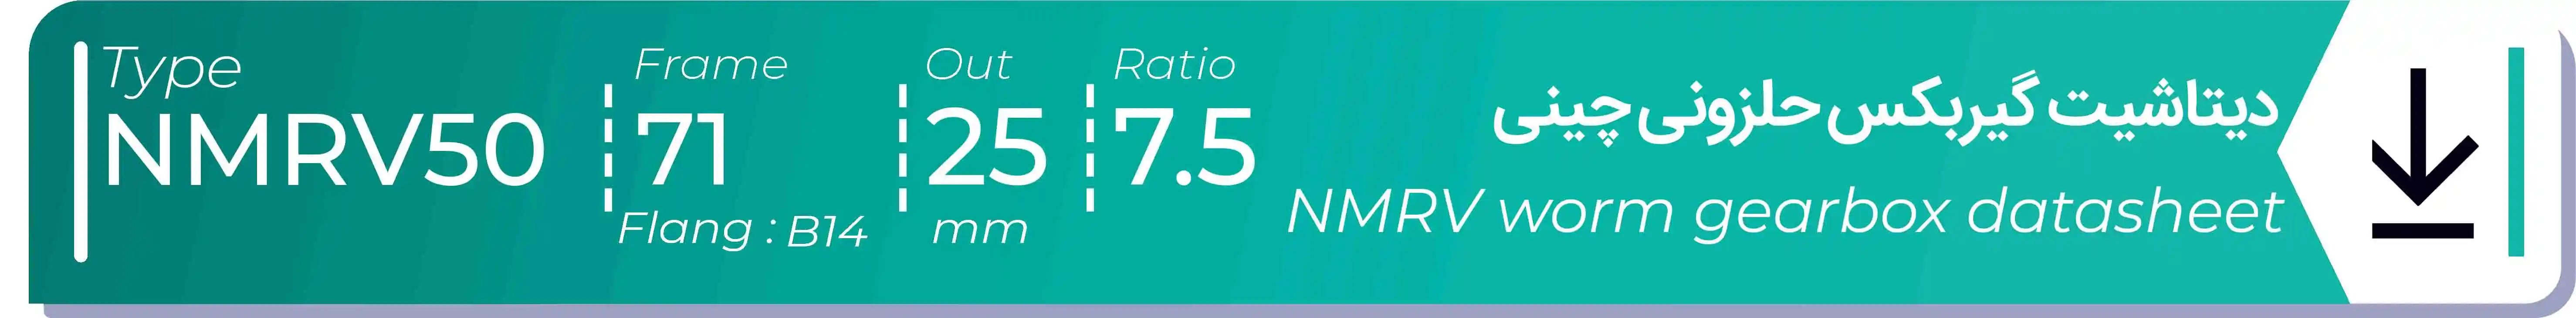  دیتاشیت و مشخصات فنی گیربکس حلزونی چینی   NMRV50  -  با خروجی 25- میلی متر و نسبت7.5 و فریم 71